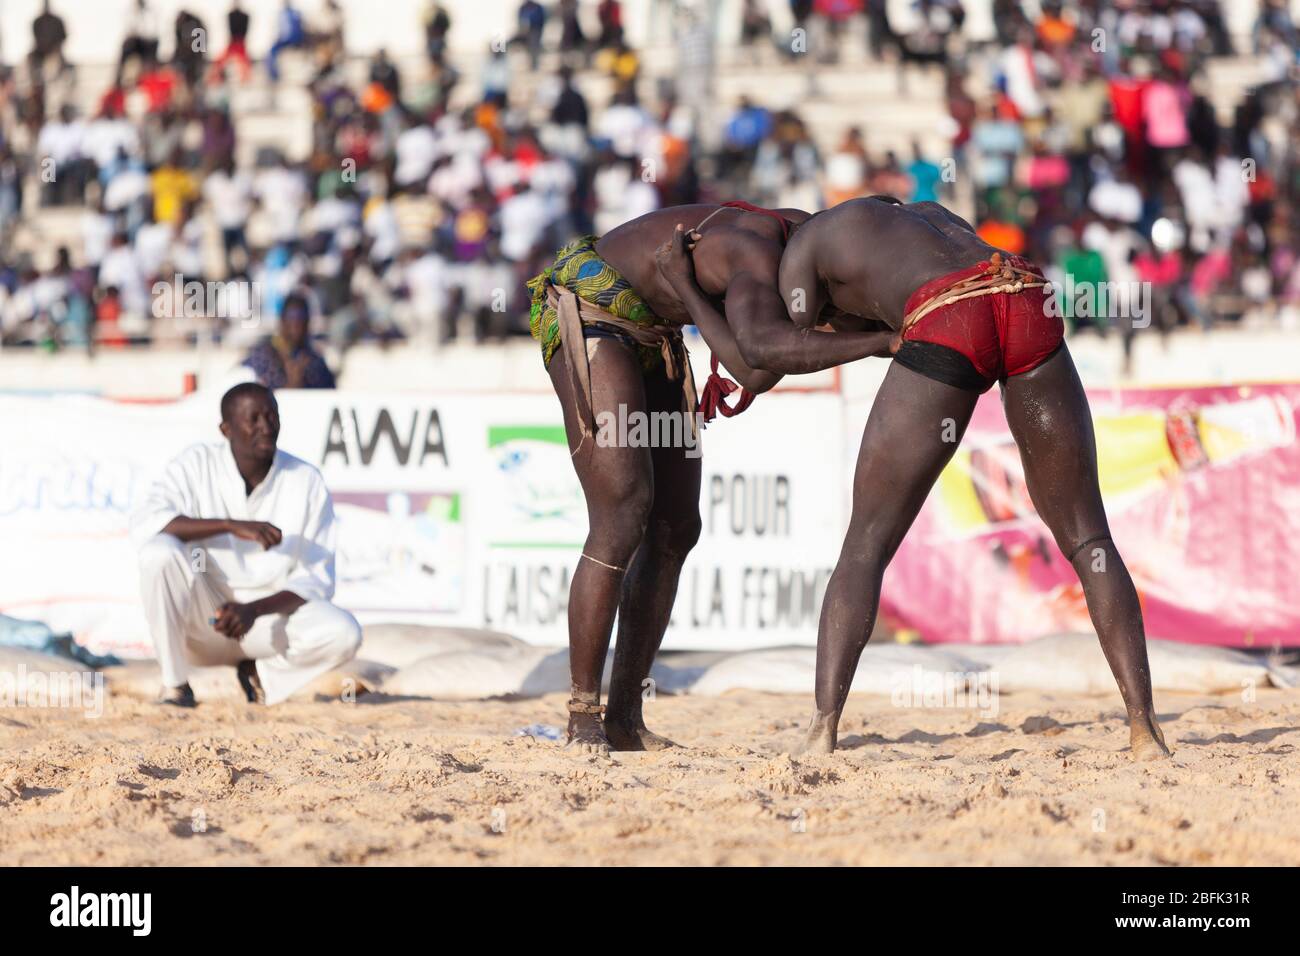 Un moment de blocage lors d'un match de lutte à Dakar, au Sénégal. Banque D'Images